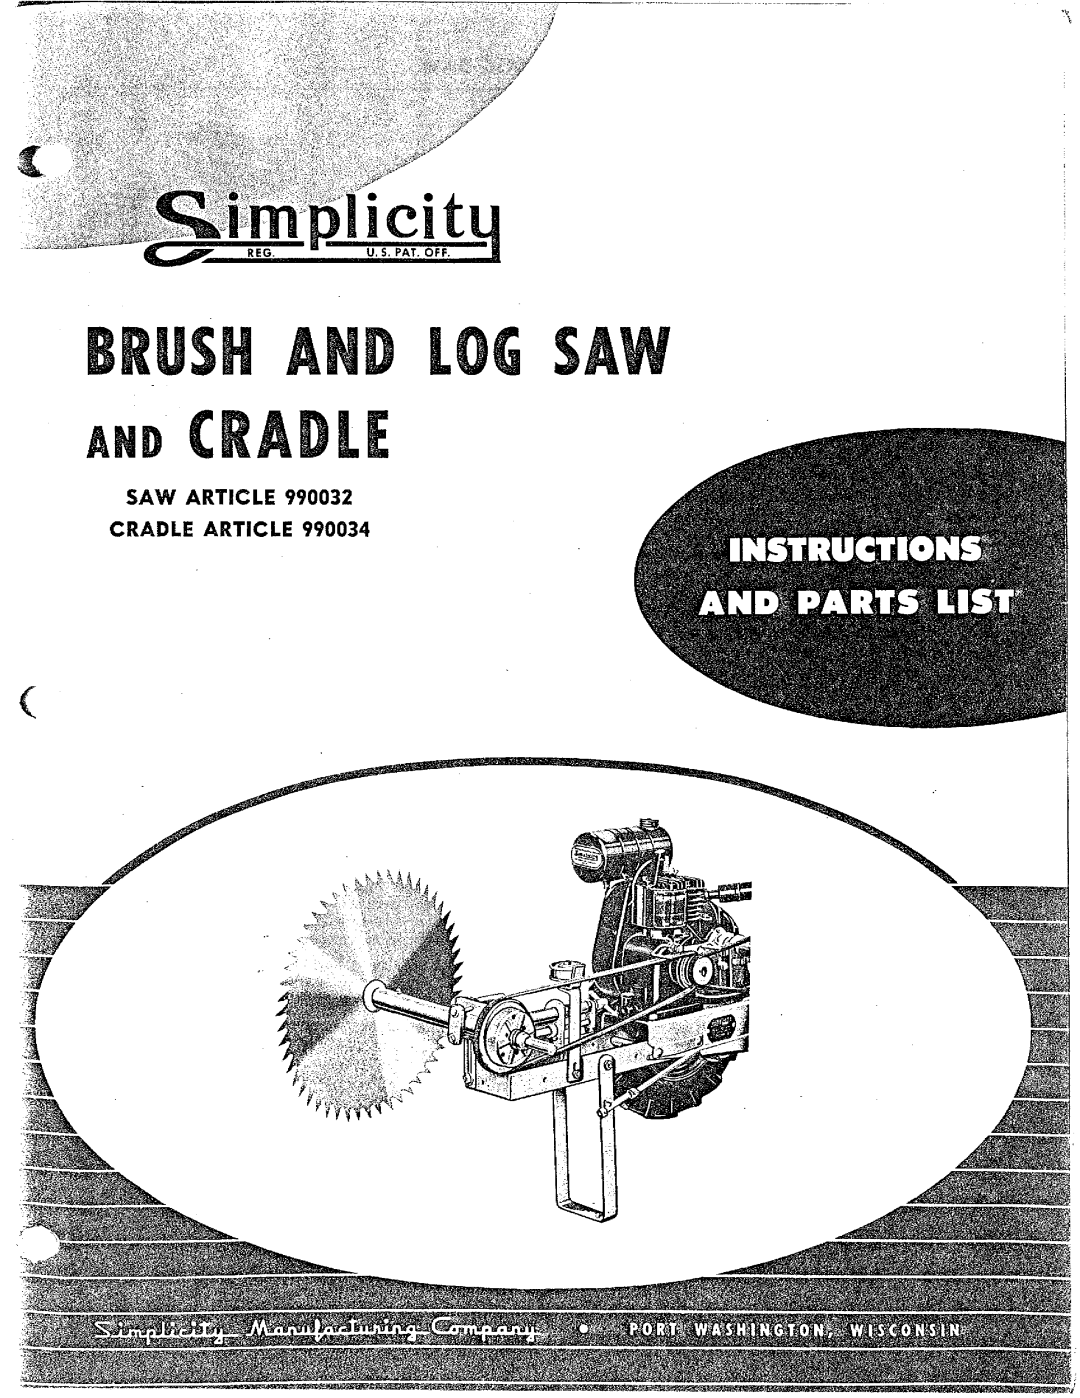 Simplicity 990034, 990032 manual 